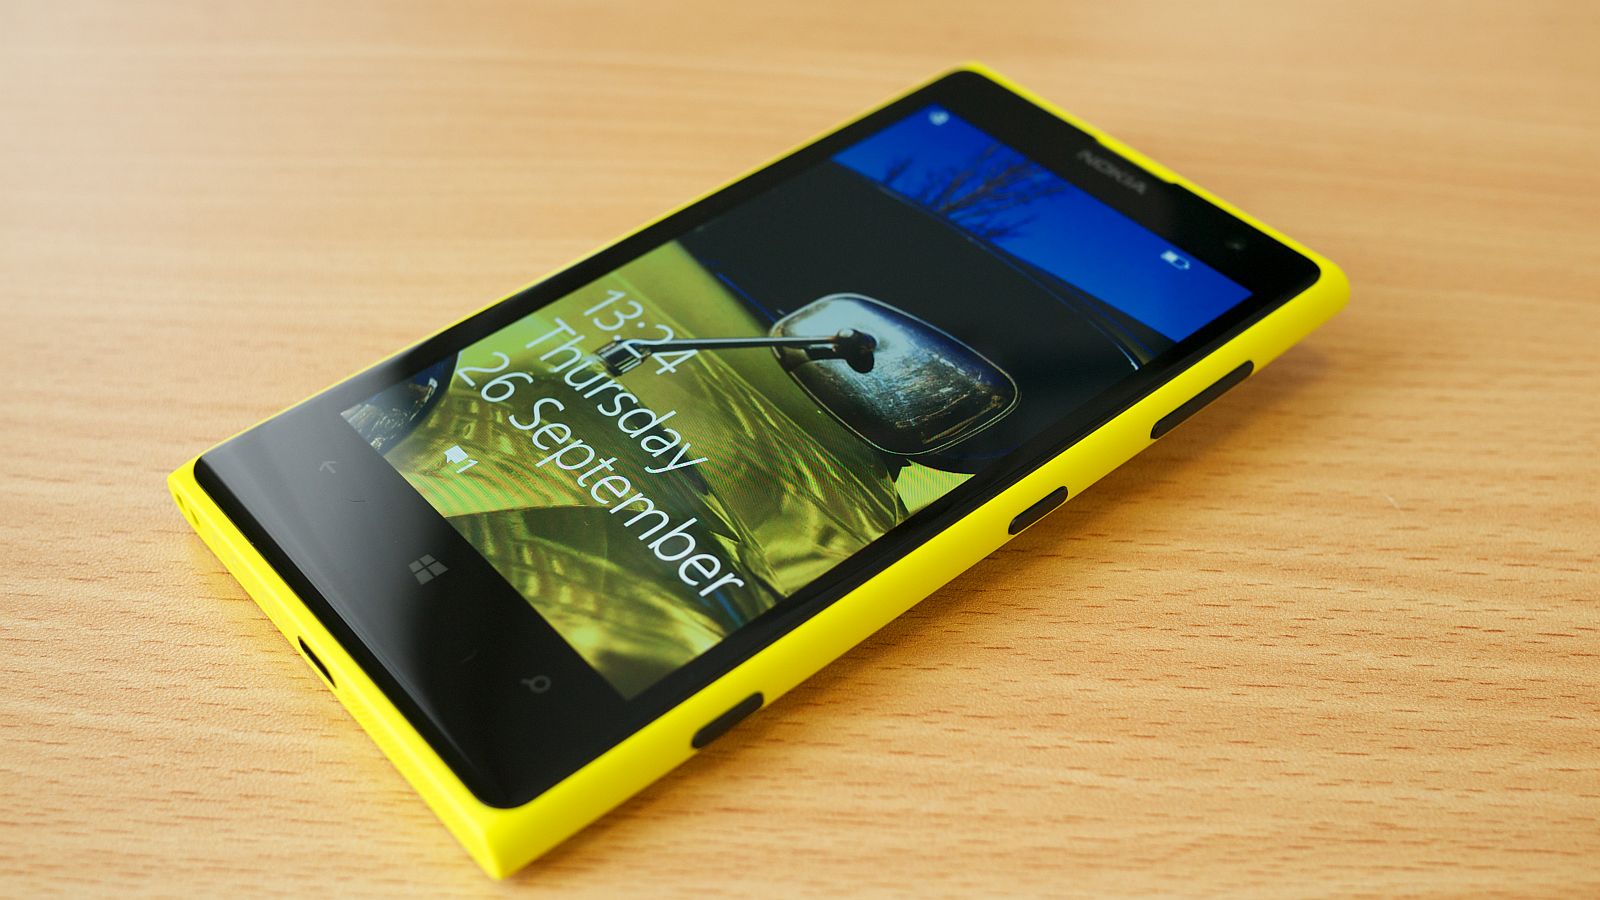 Nokia Lumia 1020 Karlis Dembrans